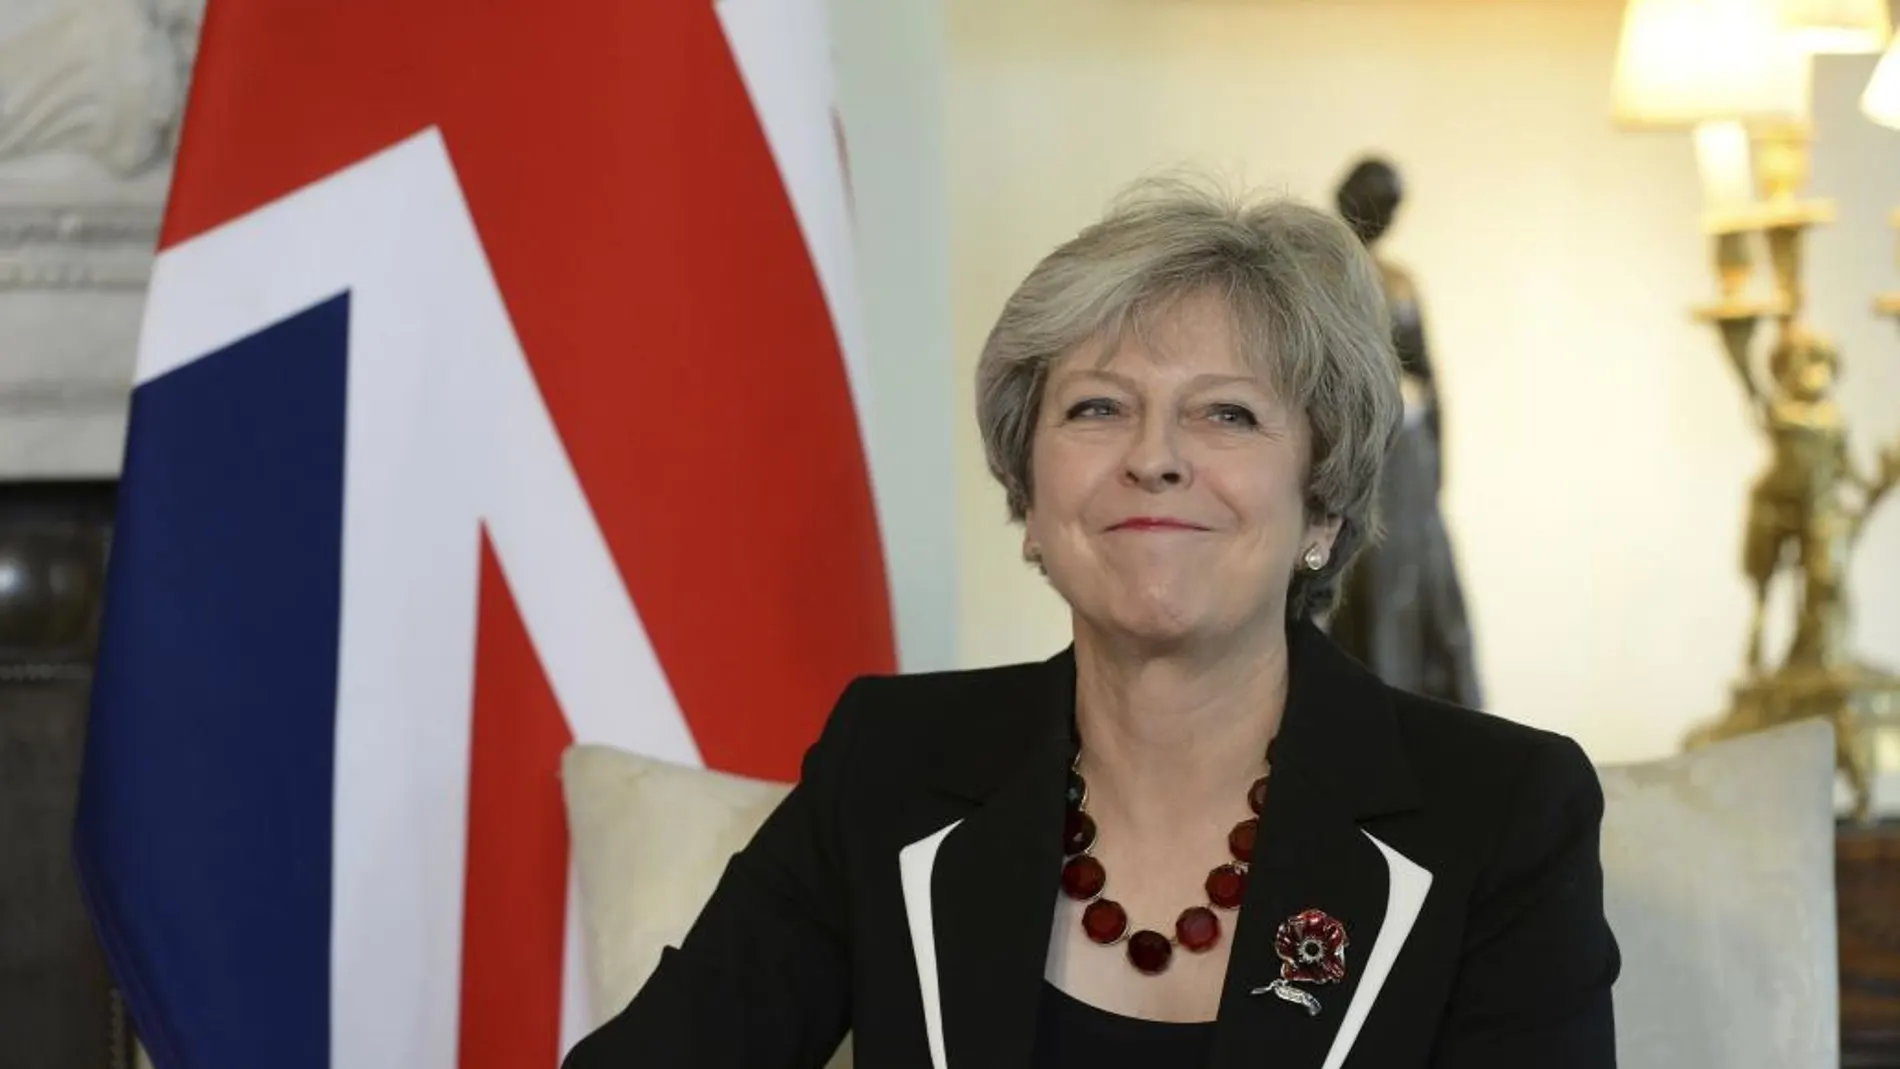 La primera ministra británica, Theresa May, en una imagen de archivo